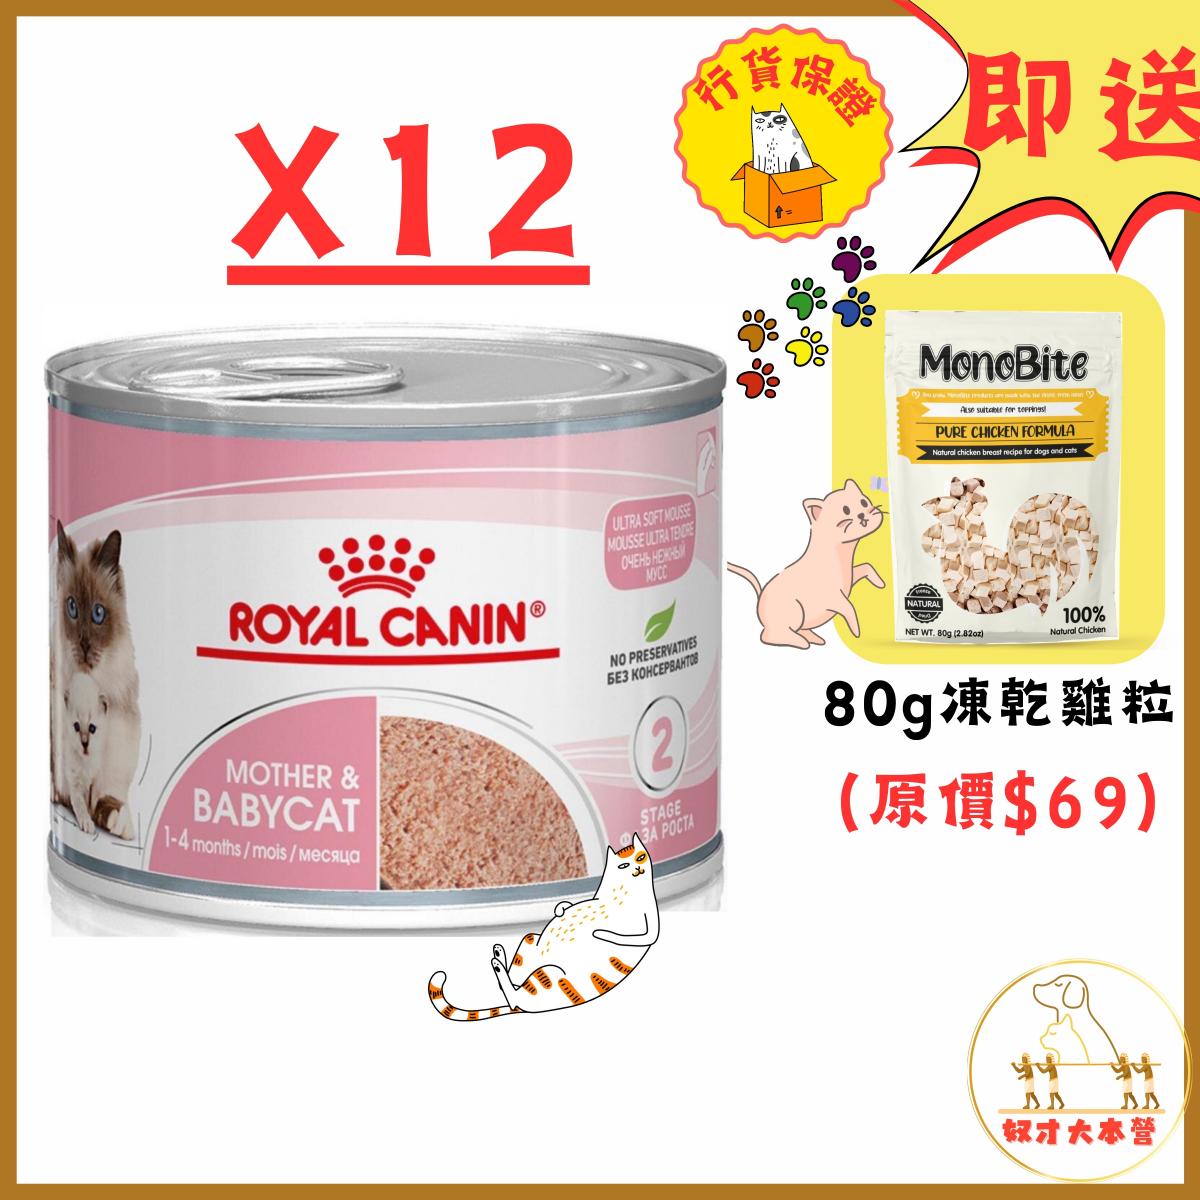 [箱裝優惠] 離乳貓及母貓營養主食 貓罐頭 (195g x12) ROYAL CANIN mother and babycat